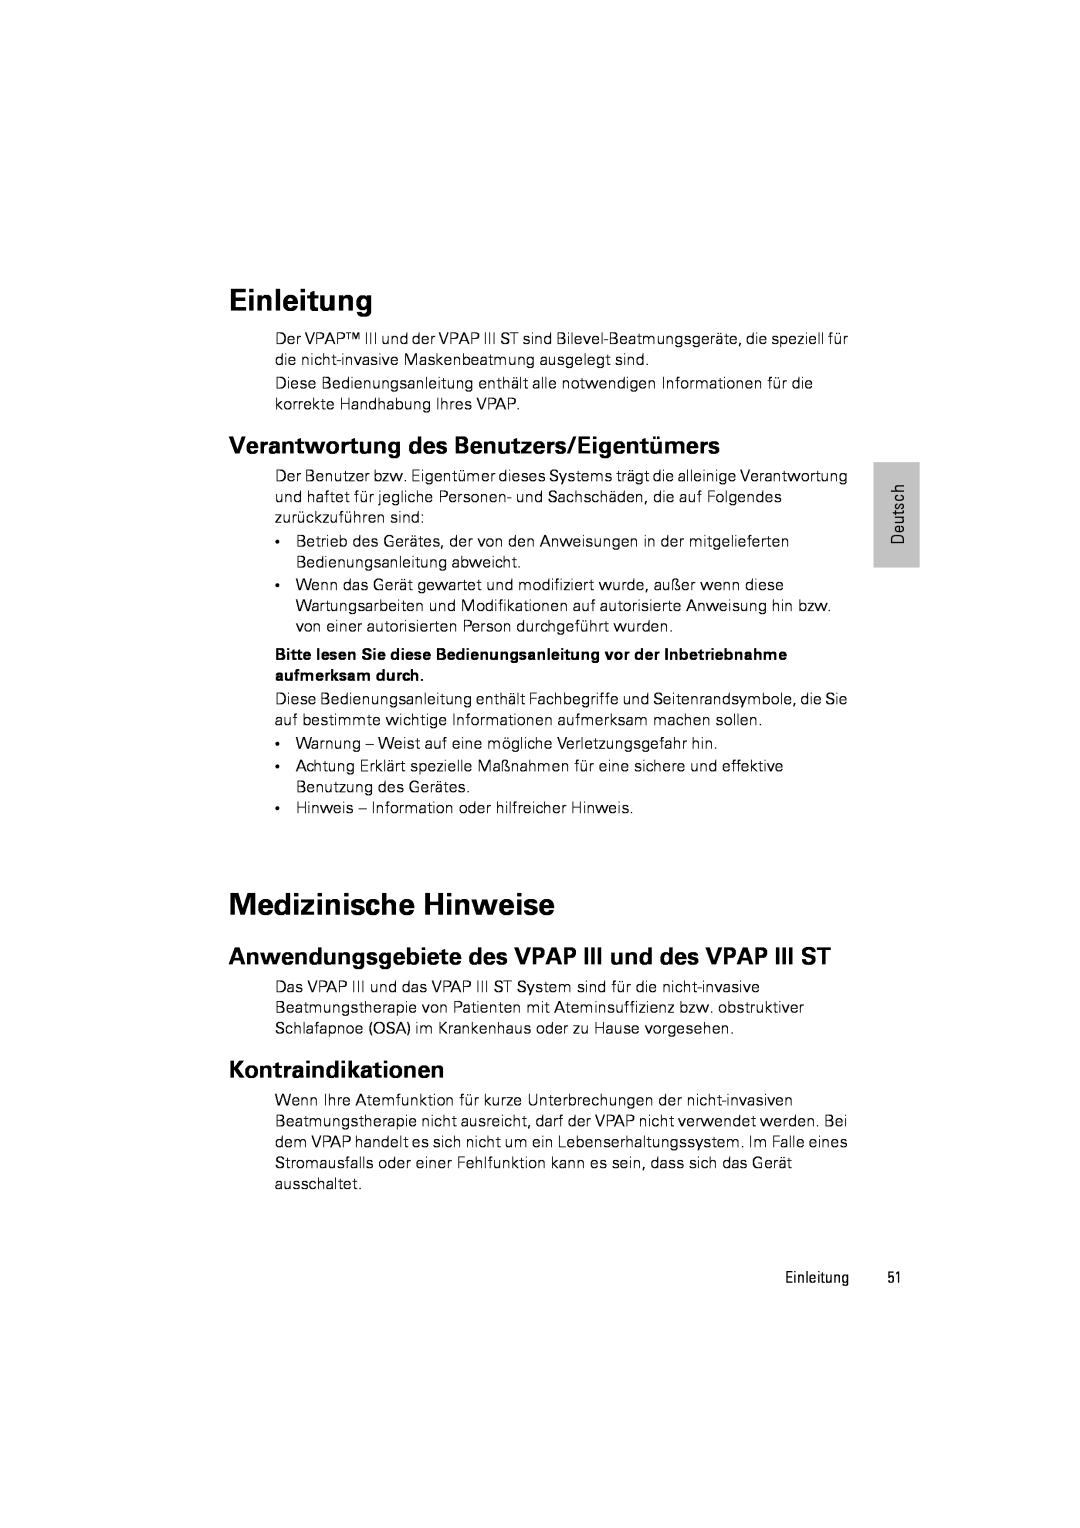 ResMed III & III ST Einleitung, Medizinische Hinweise, Verantwortung des Benutzers/Eigentümers, Kontraindikationen 